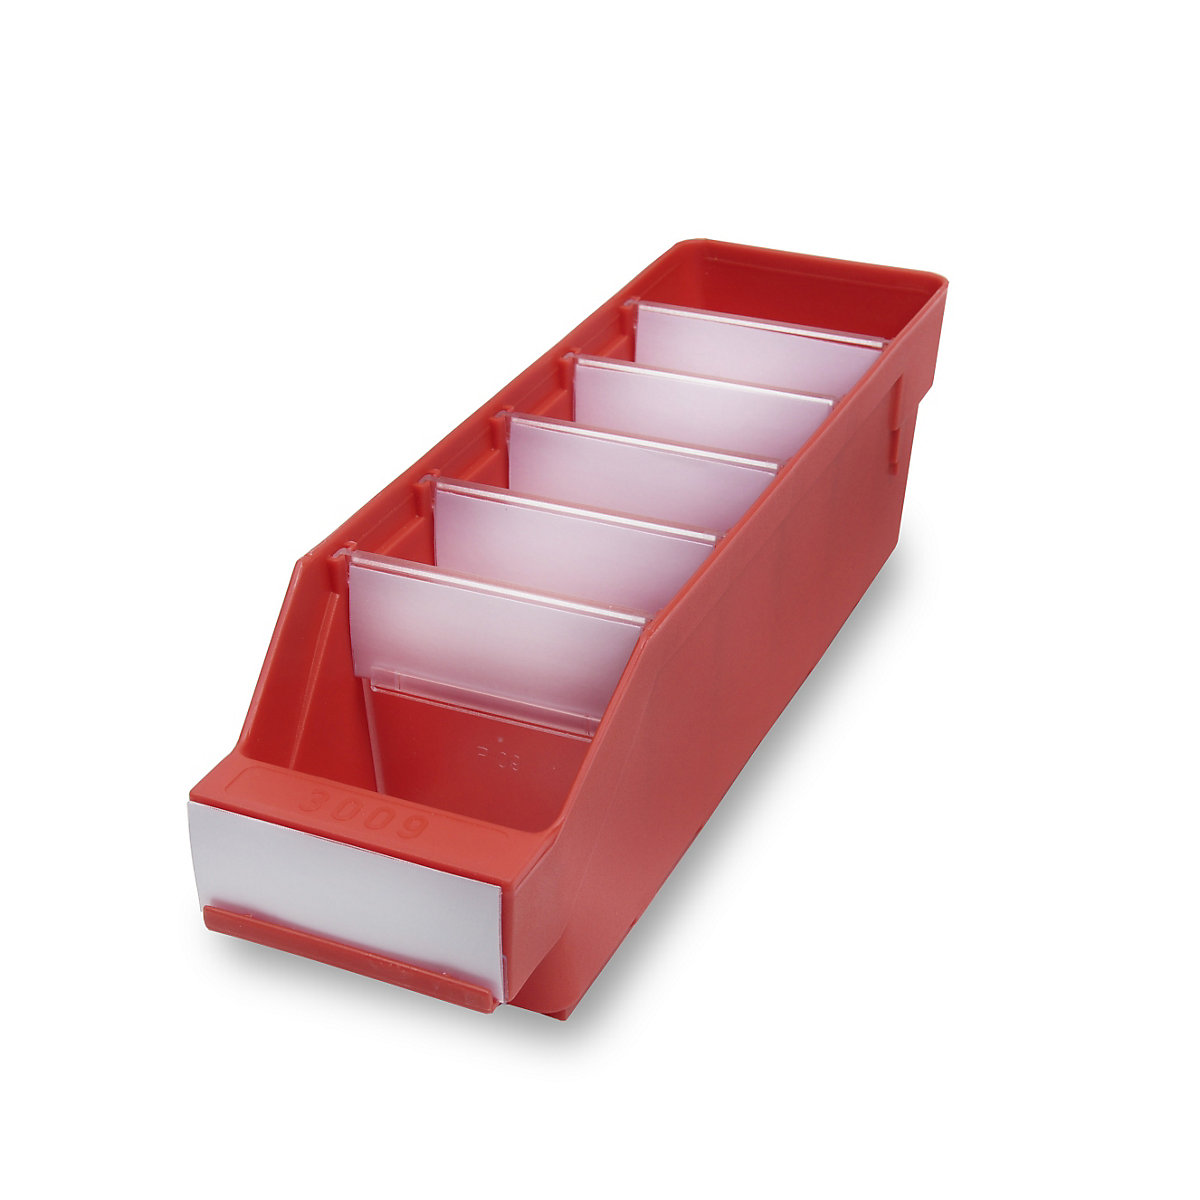 STEMO Regalkasten aus hochschlagfestem Polypropylen, rot, LxBxH 300 x 90 x 95 mm, VE 40 Stk